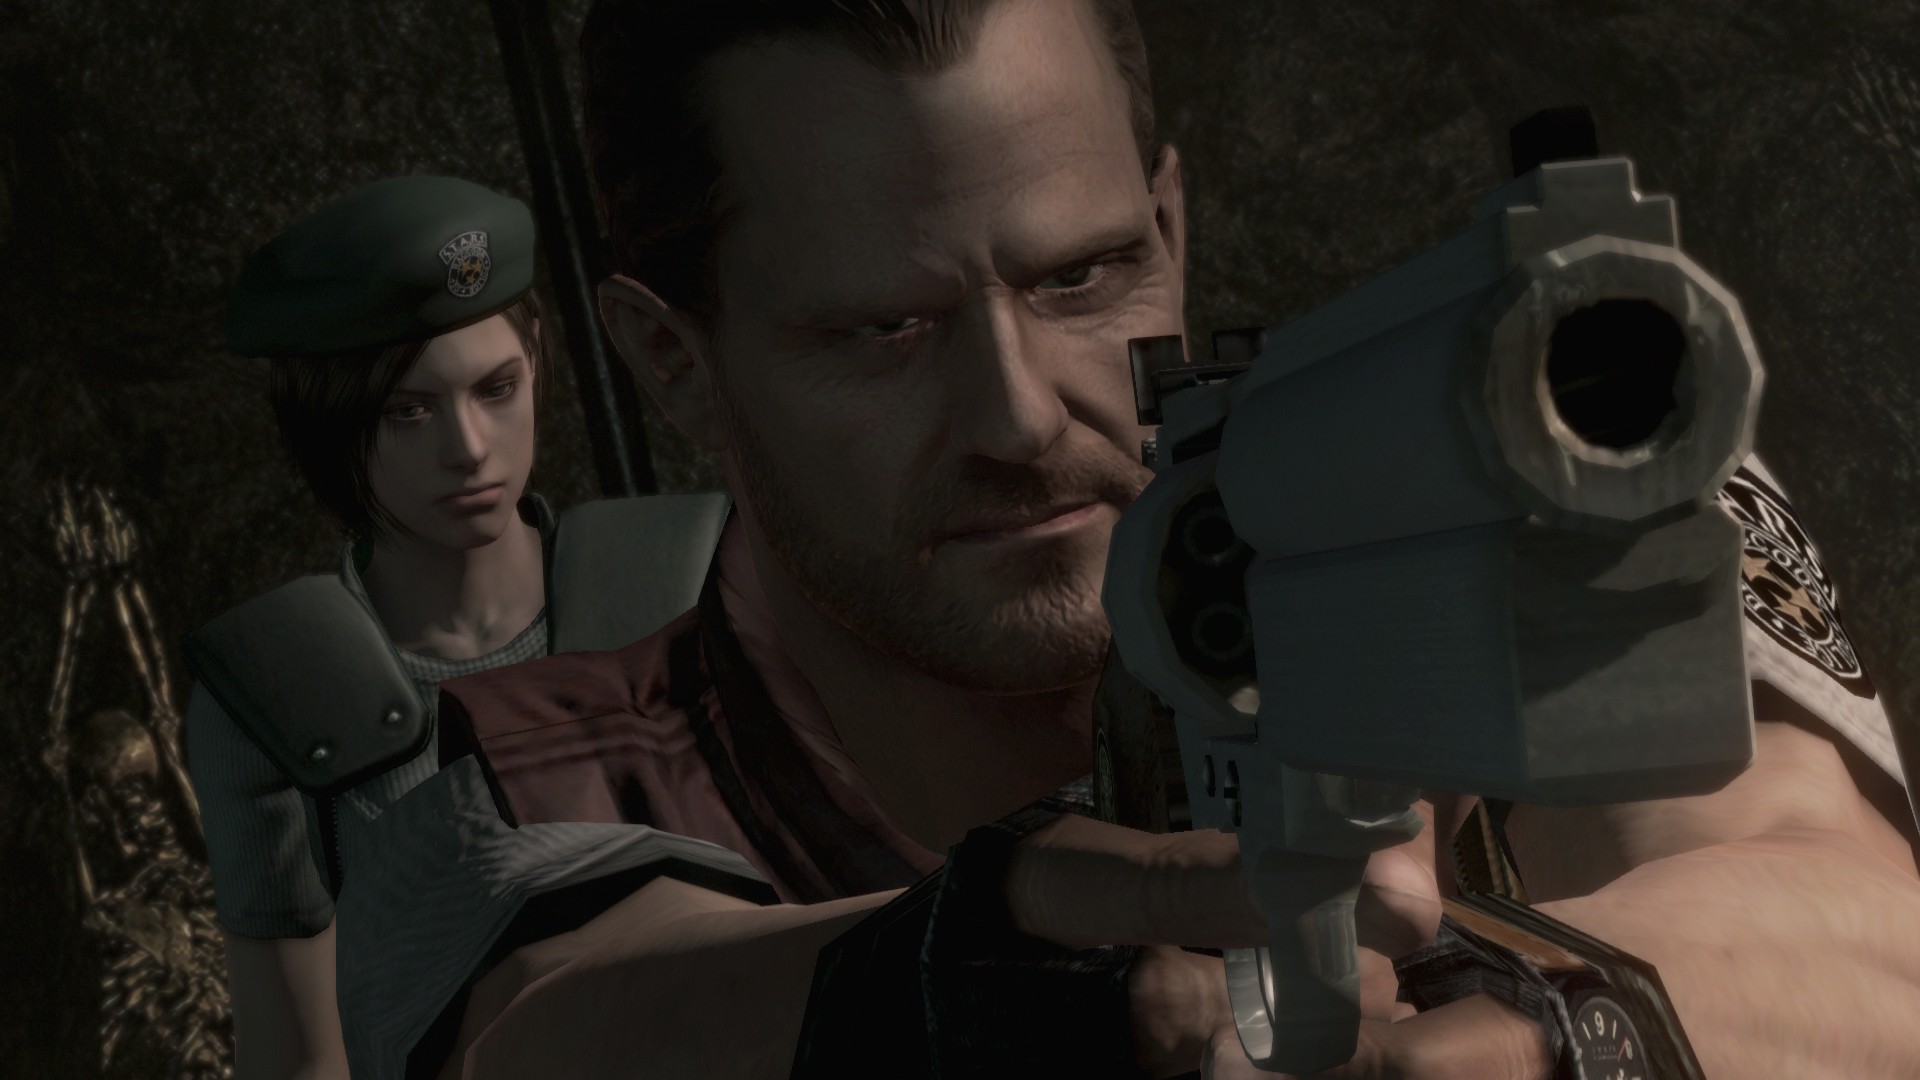 Portada de Resident Evil remake  Resident evil, Resident evil hd remaster, Resident  evil game